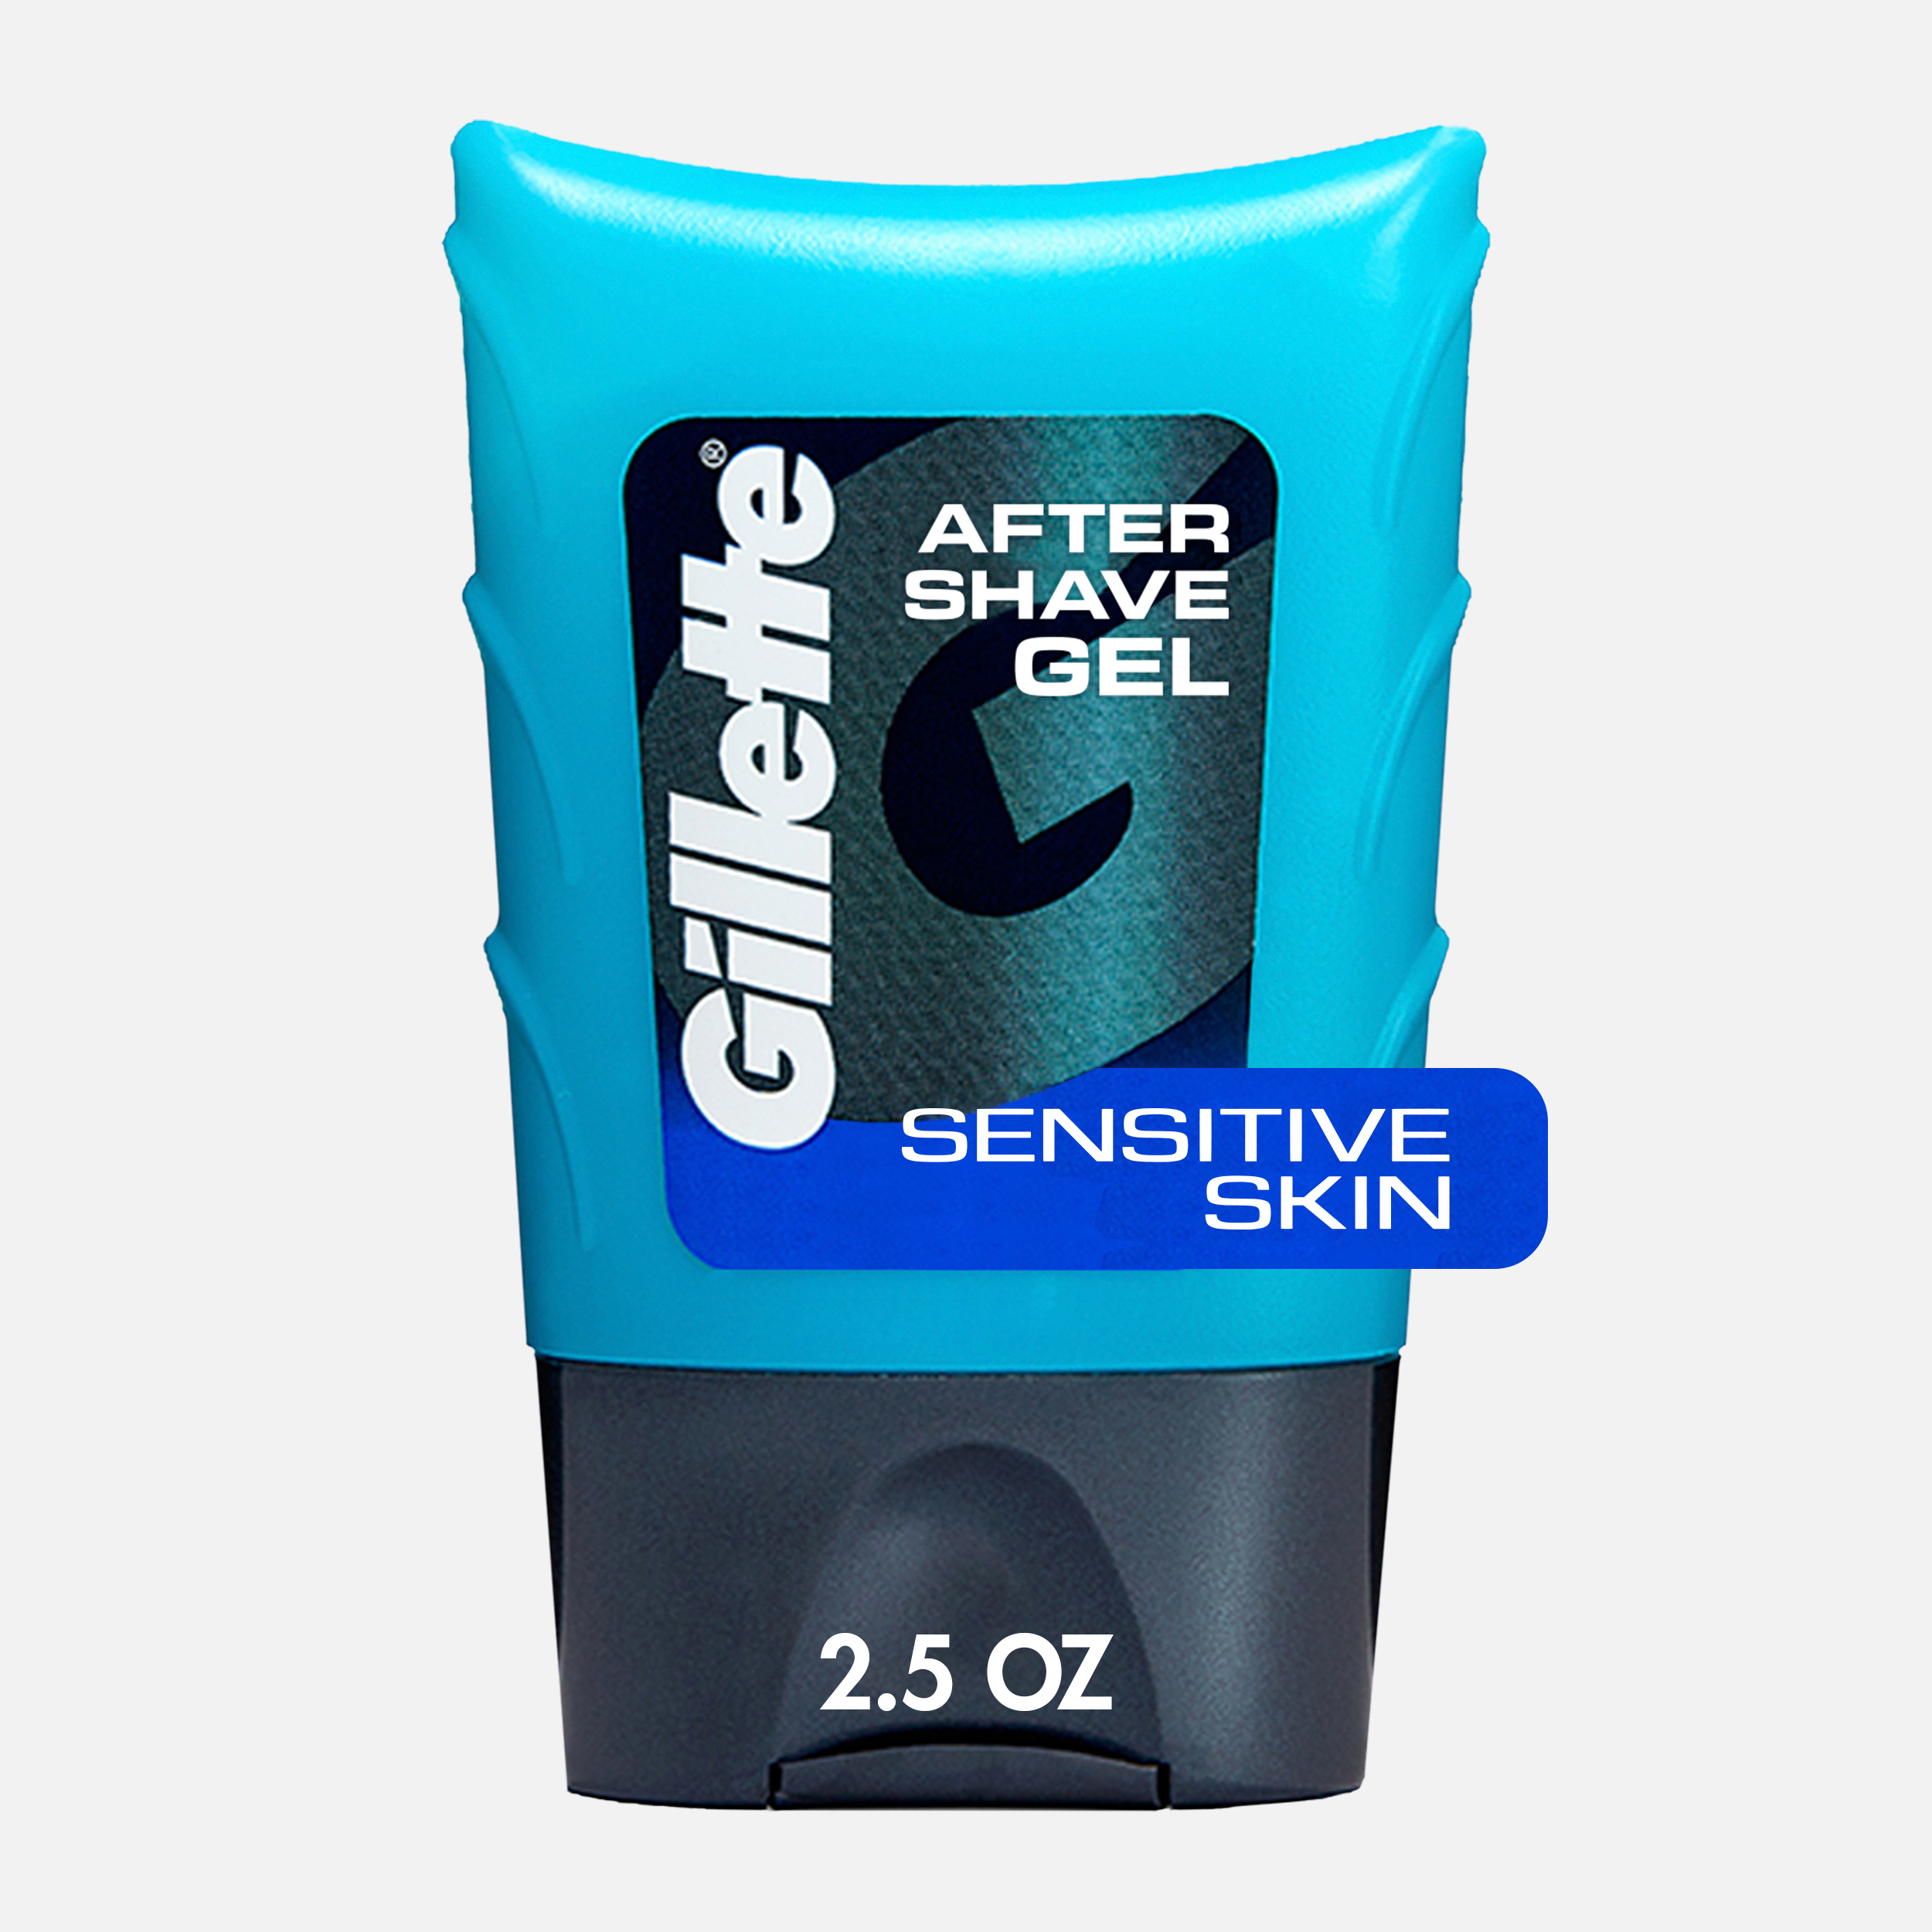 Gillette Aftershave Gel for Men, Sensitive Skin, 2.5 oz - image 1 of 7